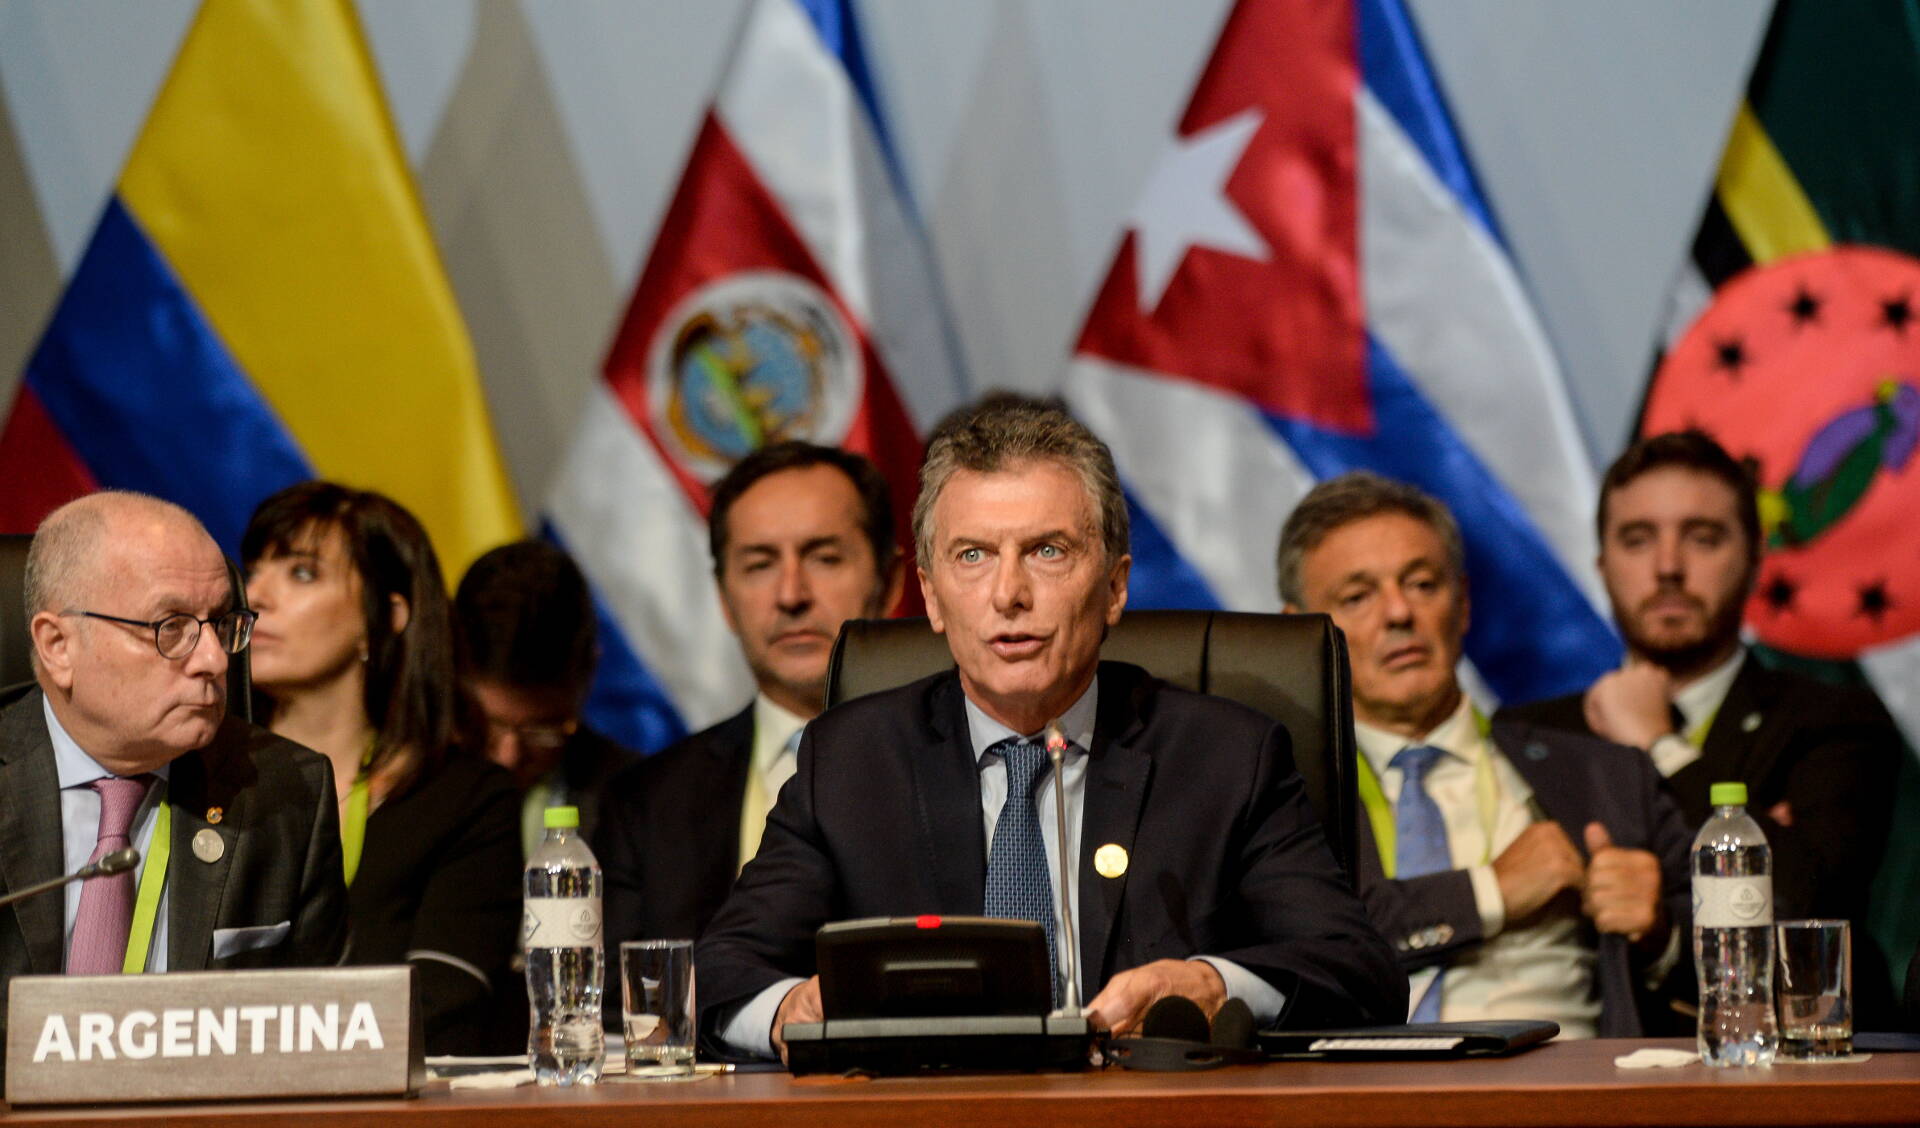 El Presidente pidió por una “verdadera salida democrática y pacífica para Venezuela”